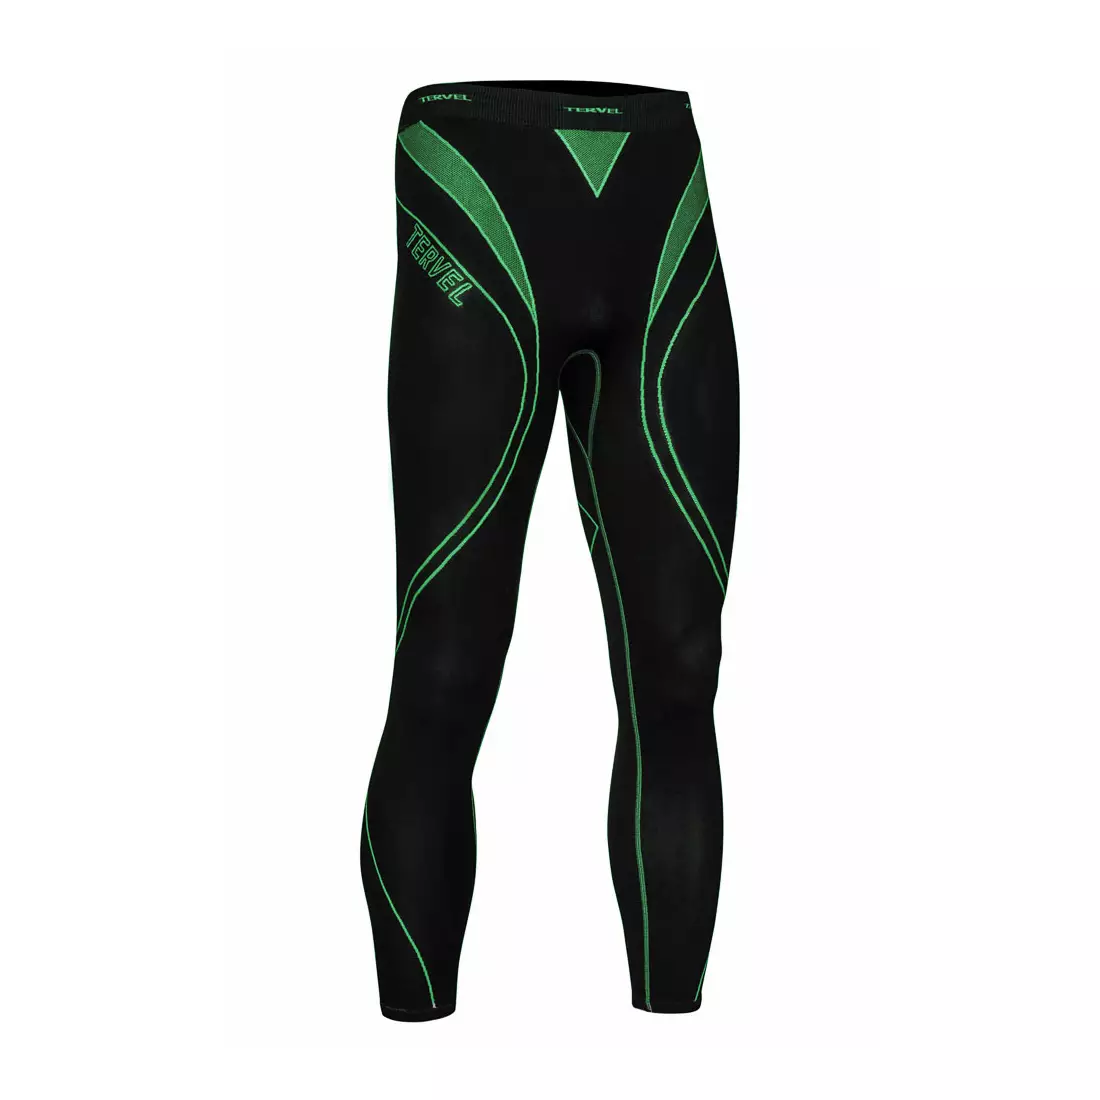 TERVEL OPTILINE férfi termoaktív nadrág / leggings OPT3004, fekete és zöld